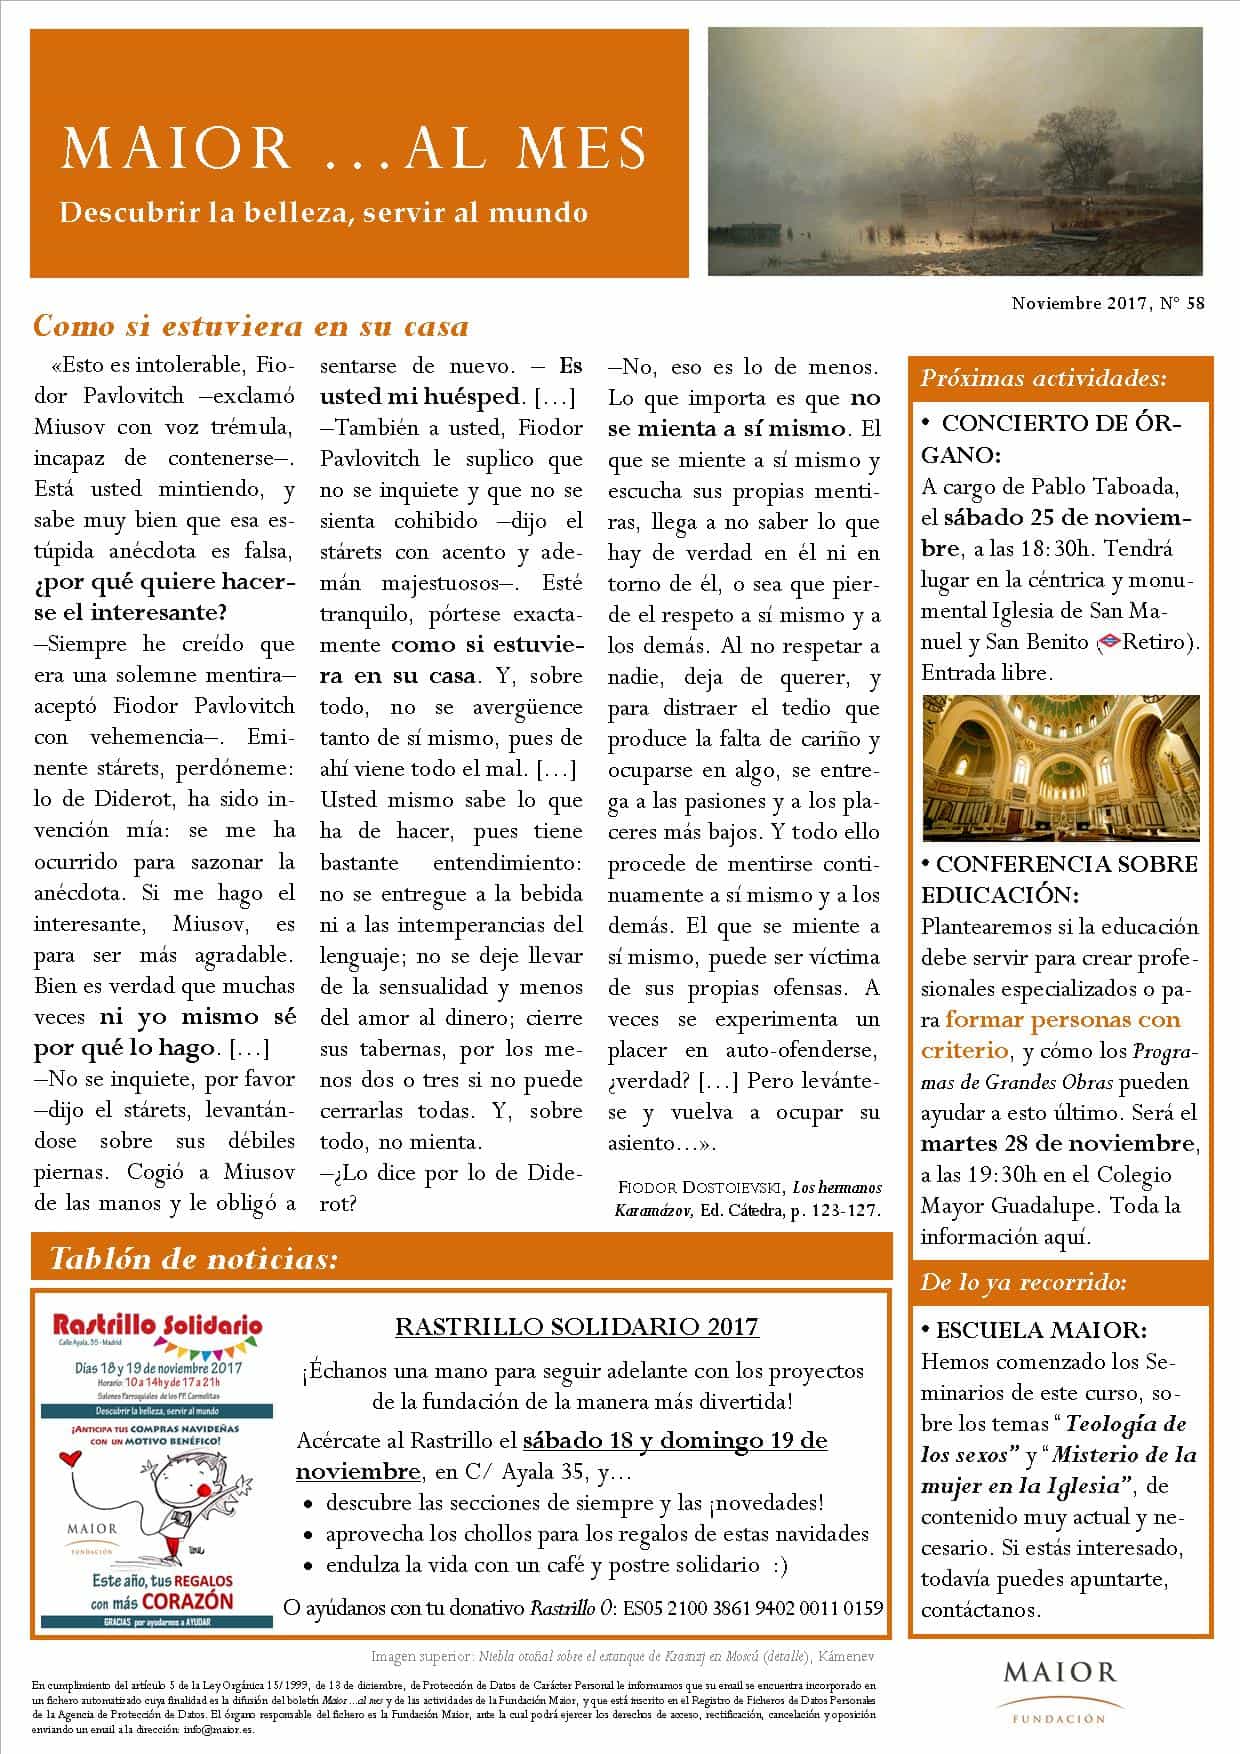 Boletín mensual de noticias y actividades de la Fundación Maior. Edición de noviembre 2017